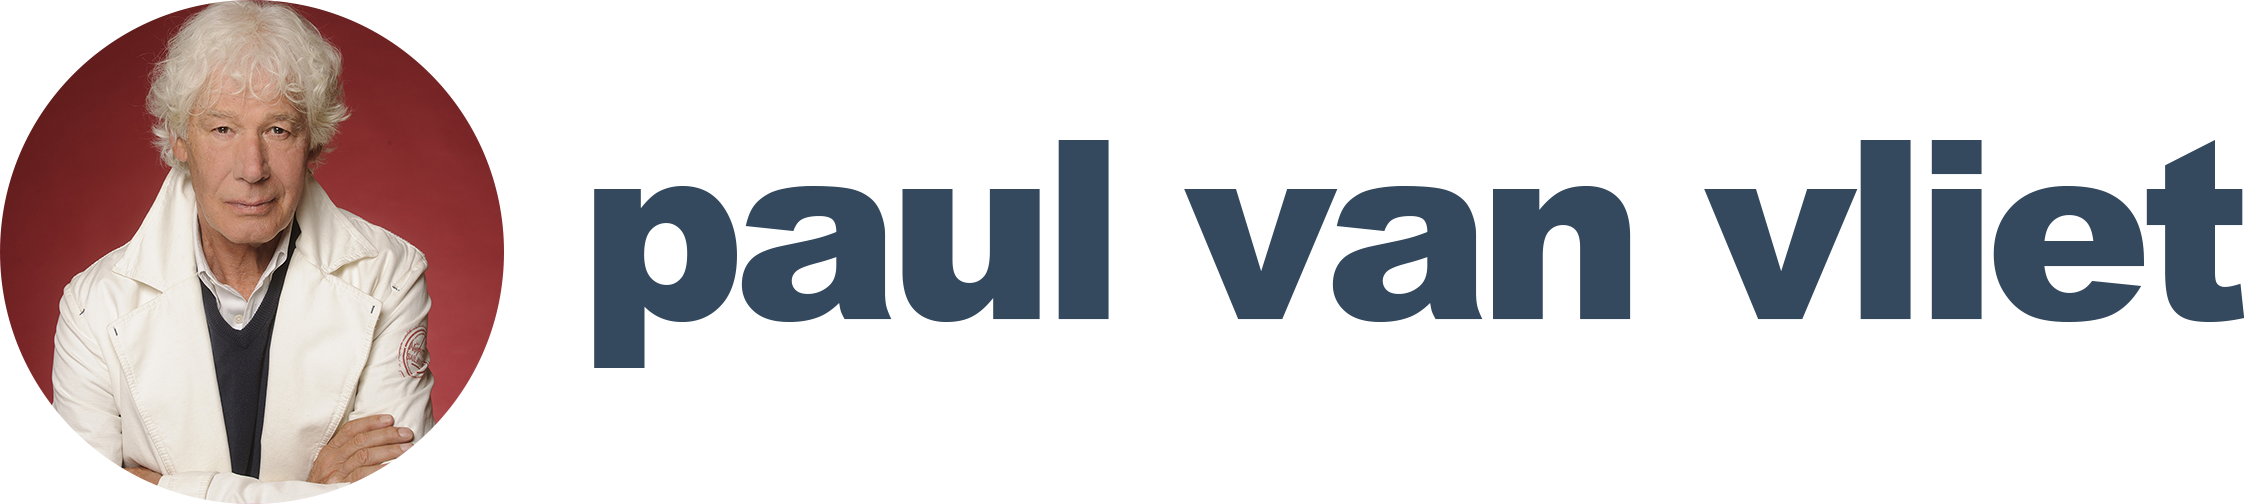 Paul van Vliet